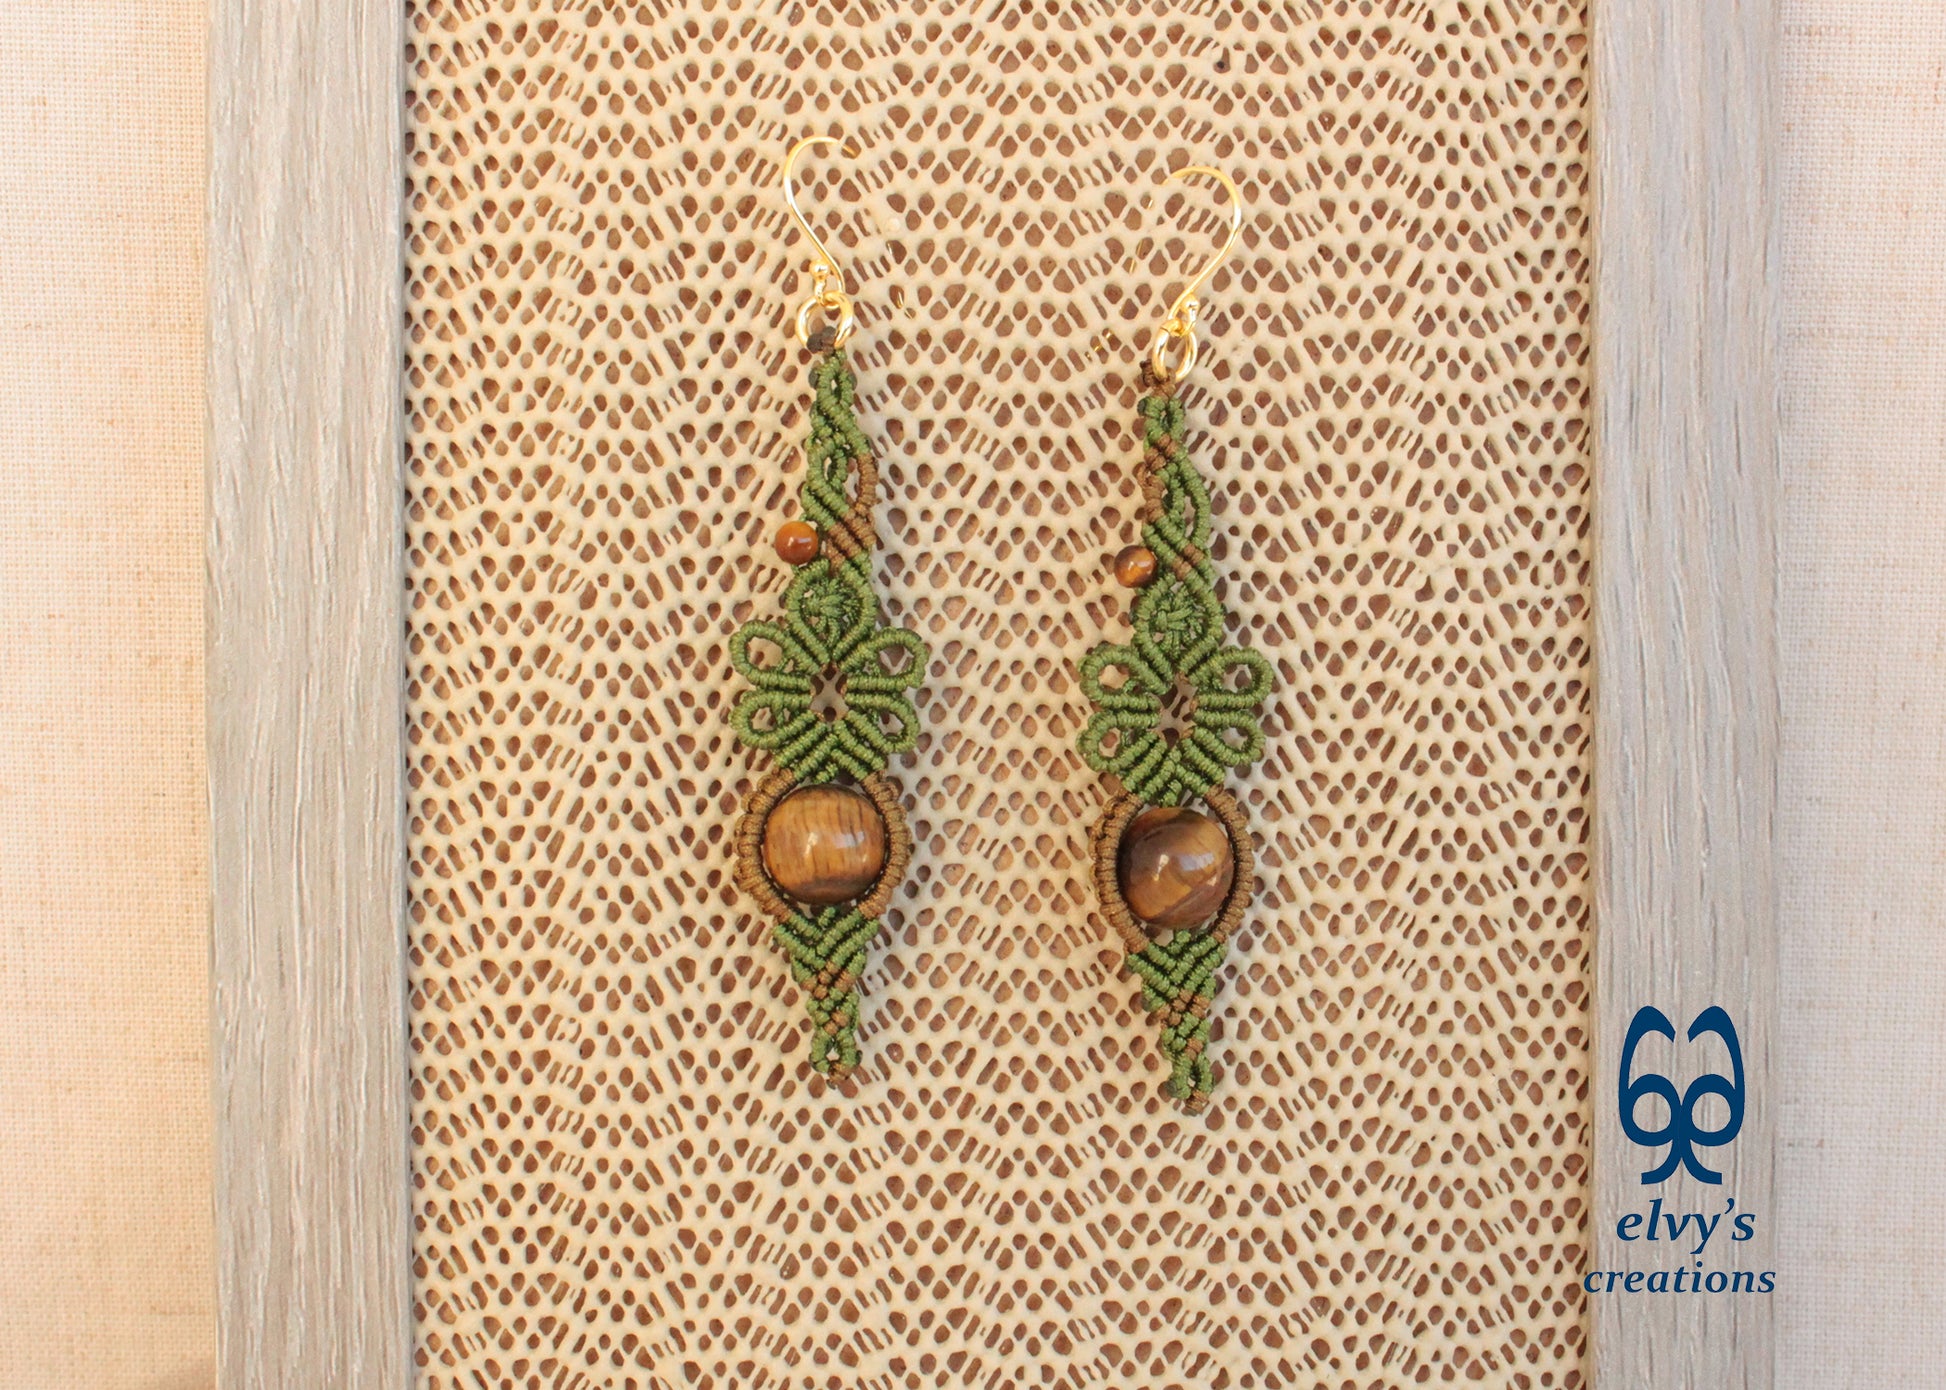 Green Macrame Earrings Gold Tiger Eye Gemstones Flower Dangle Lace Earrings Gift For Women